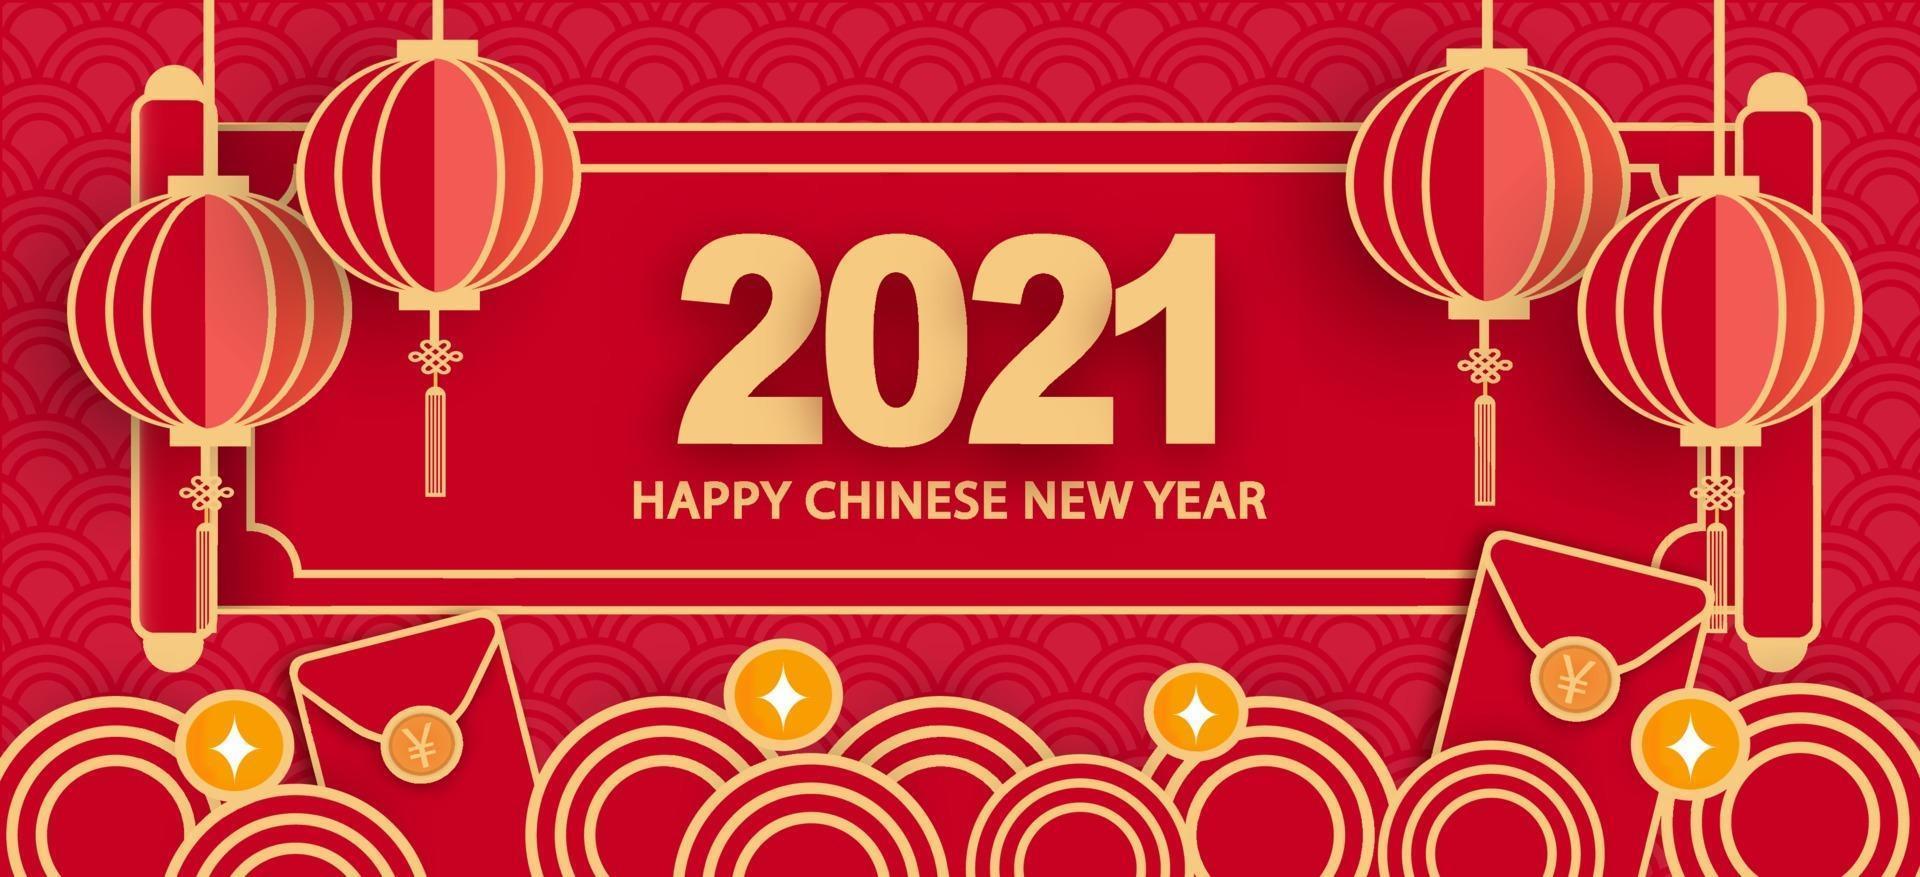 año nuevo chino 2021 año del buey banner vector